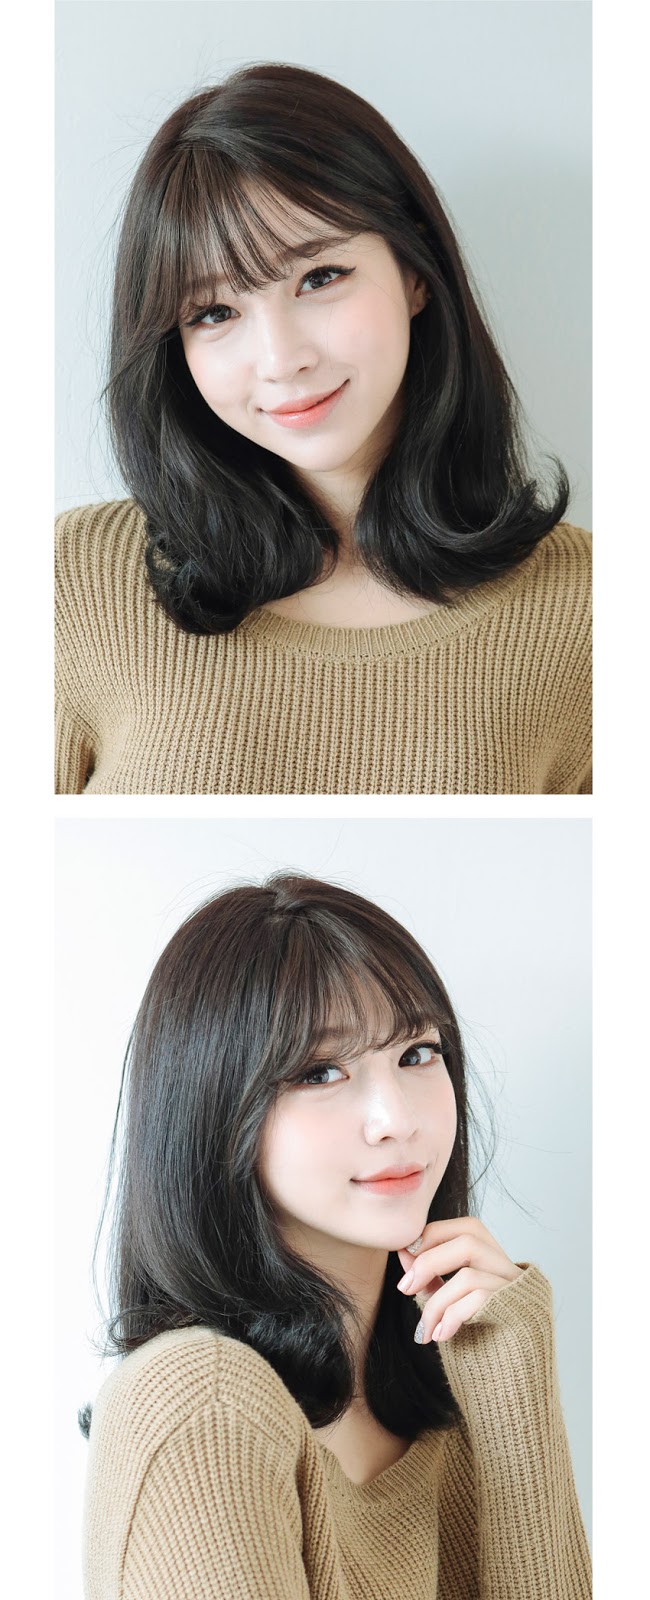 Korean bangs thin version non shiny - GIRLHAIRDO.COM 